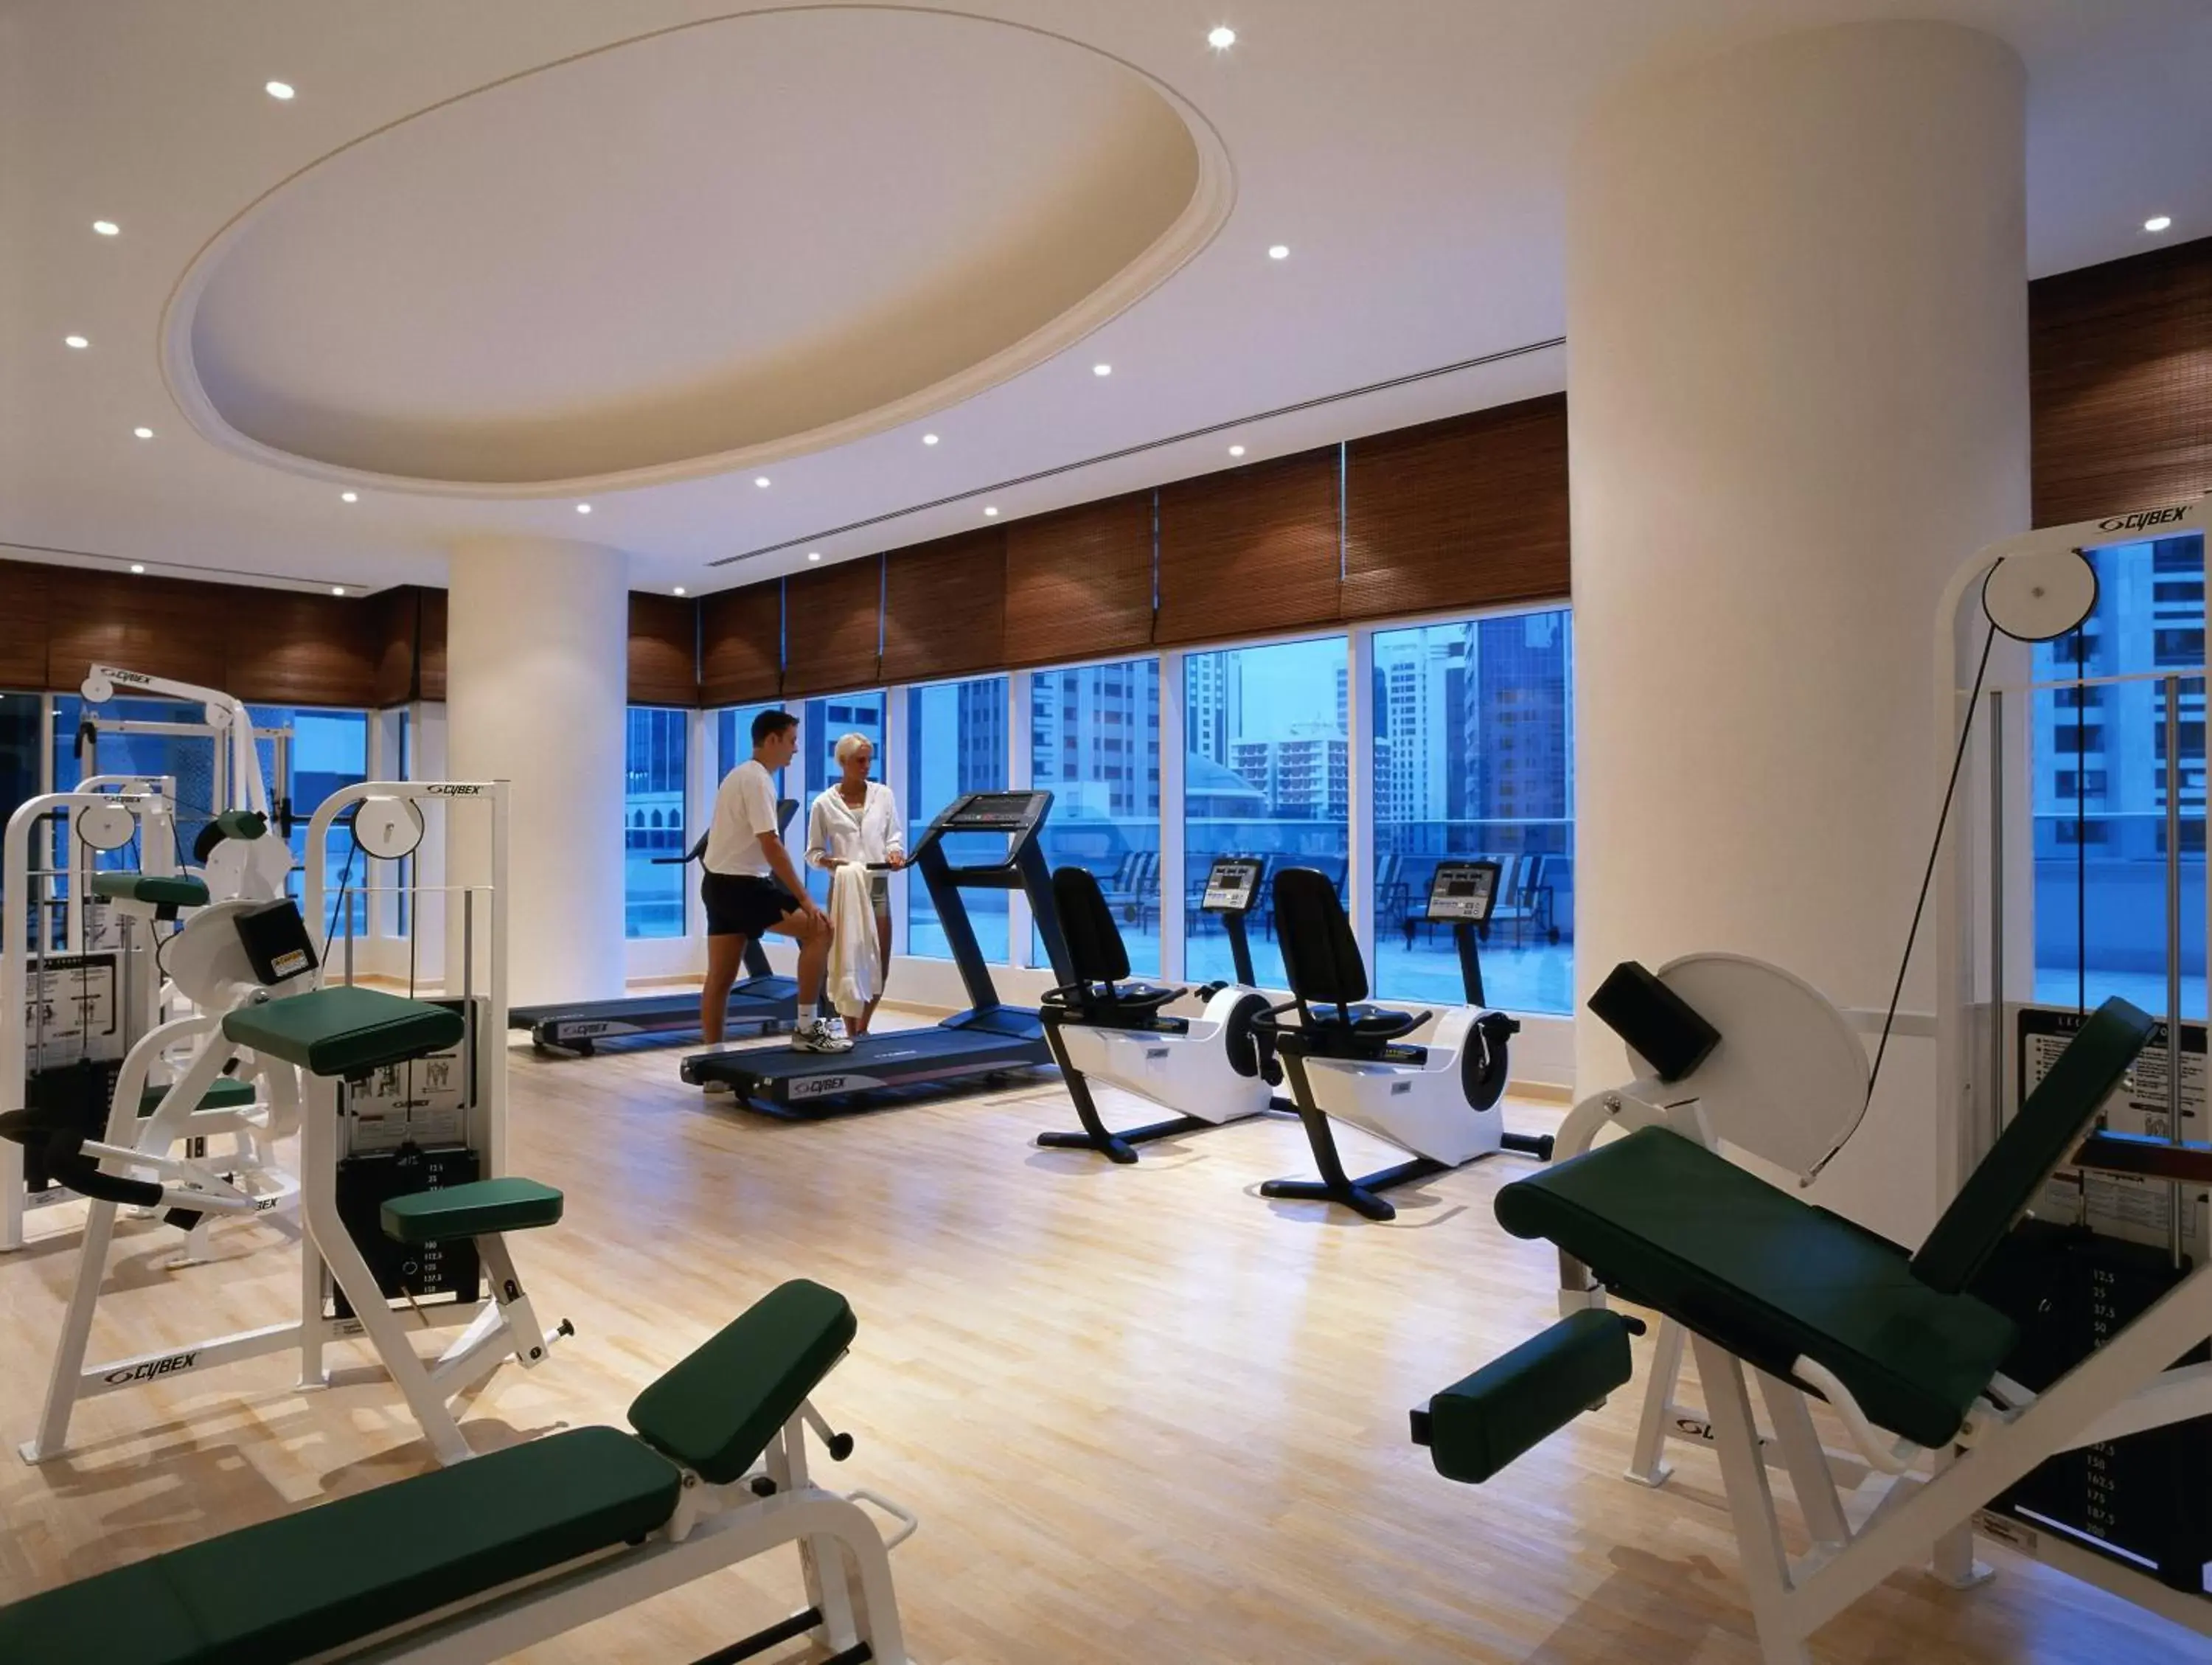 Fitness centre/facilities, Fitness Center/Facilities in Corniche Hotel Abu Dhabi